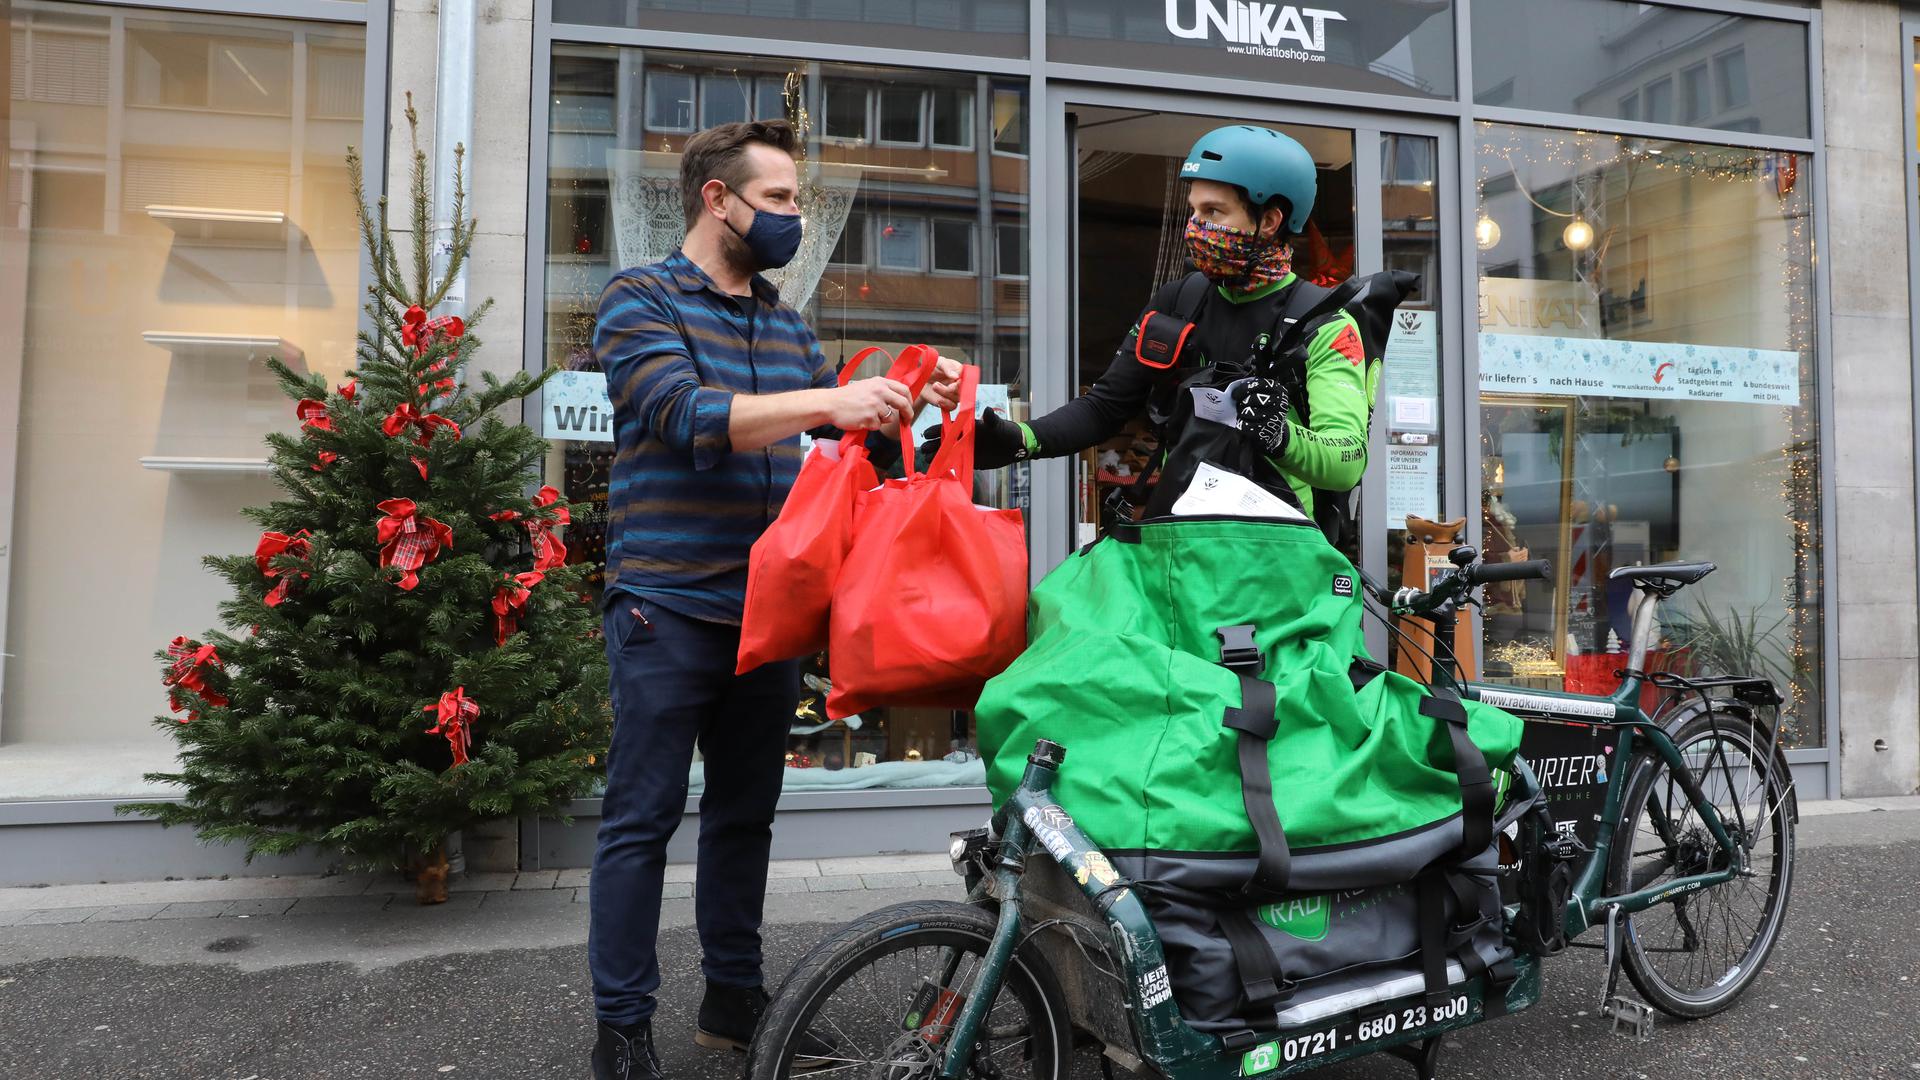 Übergabe vor dem Geschäft: Unikat-Inhaber Andreas Preißler händigt dem Radkurier Bestellungen aus. Die Lieferung ist für die Kunden im Stadtgebiet kostenfrei.  